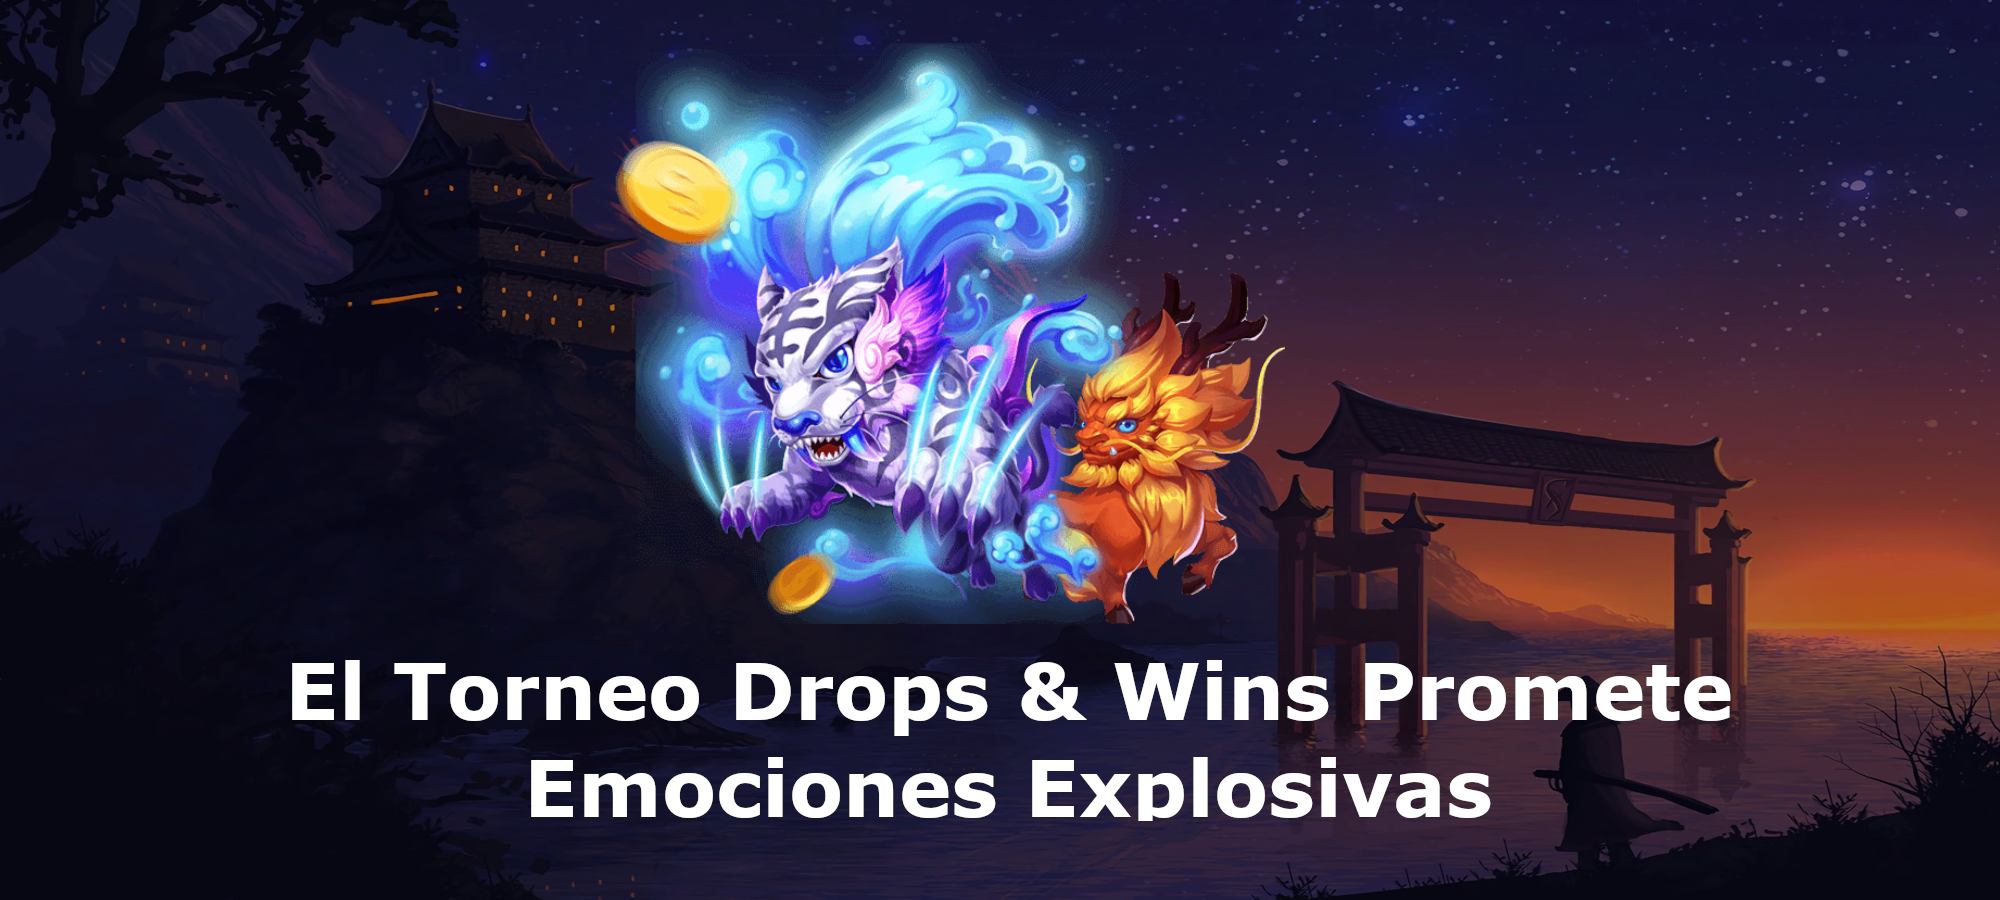 El Torneo Drops & Wins Promete Emociones Explosivas